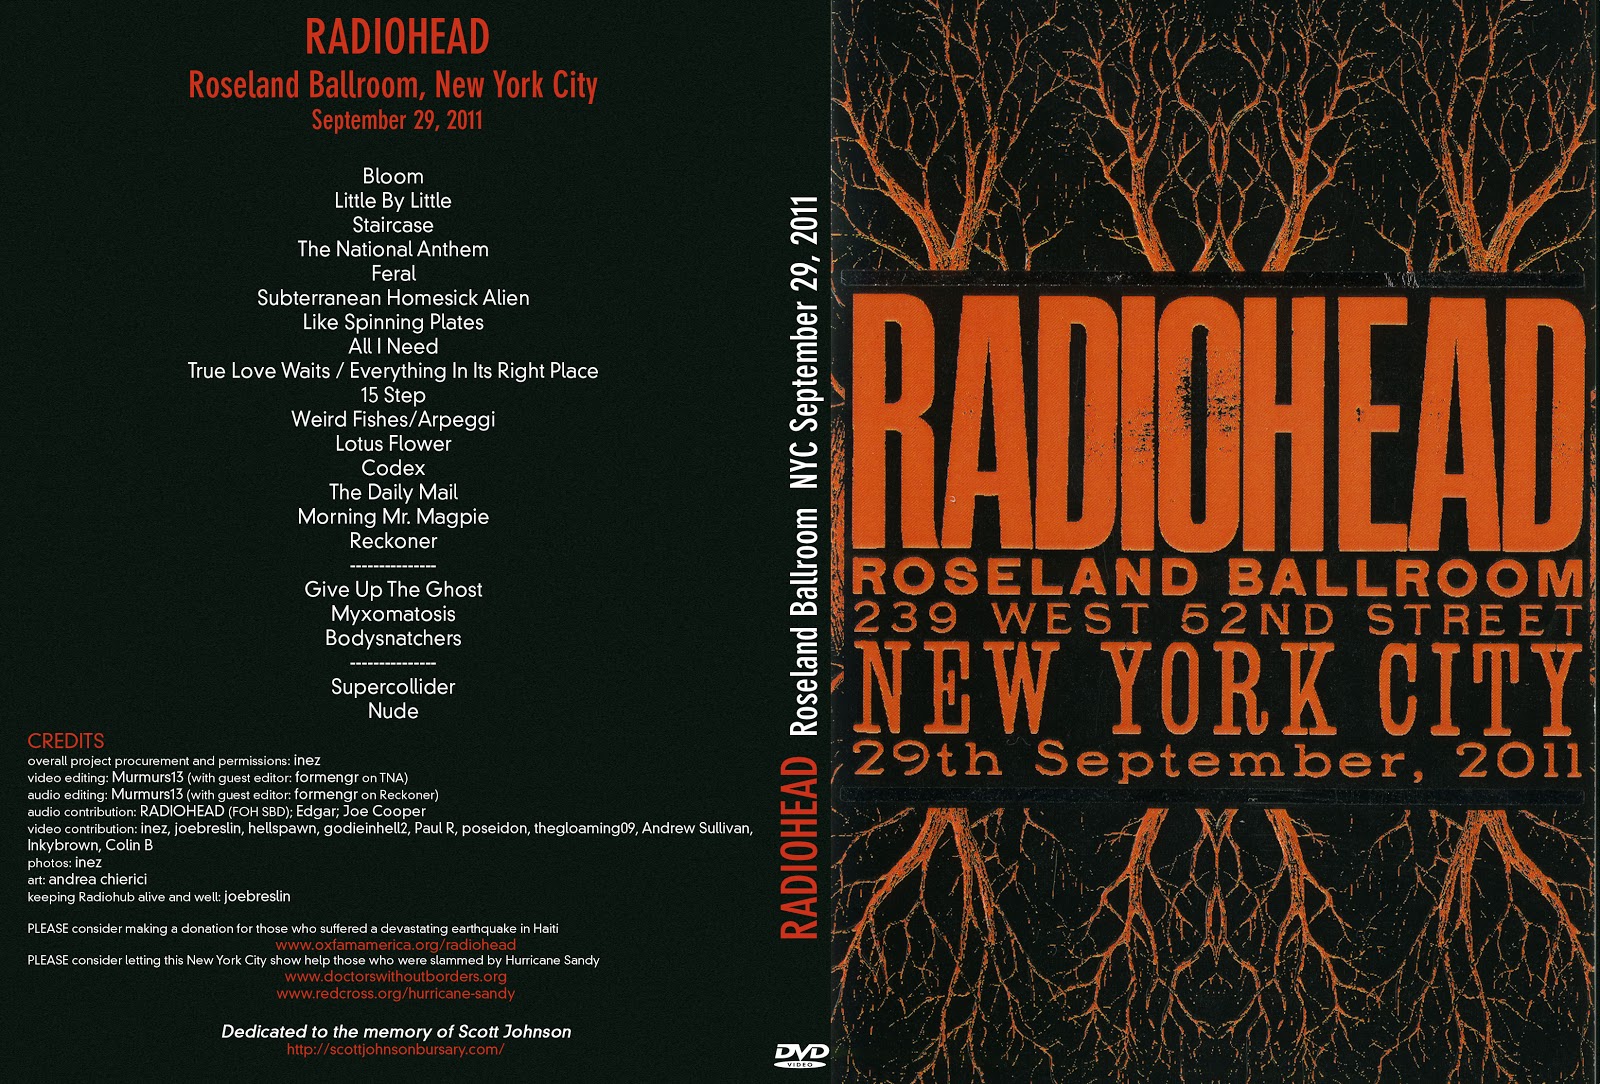 Radiohead – Scarica gratis il concerto 2012 alla Roseland Ballroom